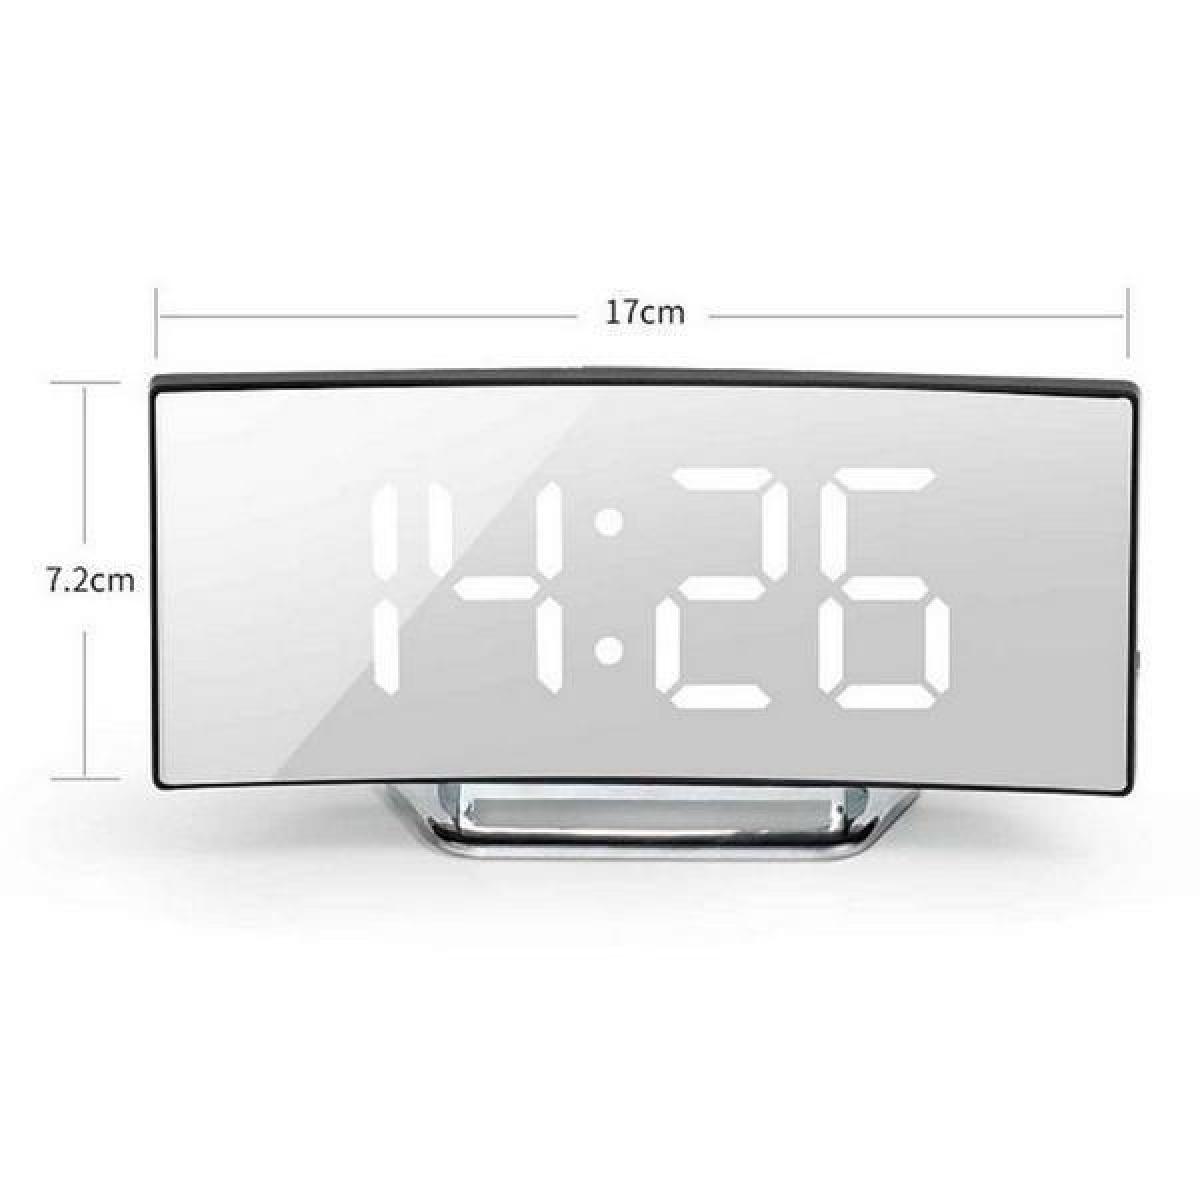 Ψηφιακό Ρολόι Καθρέφτης Led Με Ξυπνητήρι Μαύρο Με Λευκούς Αριθμούς CLK-03